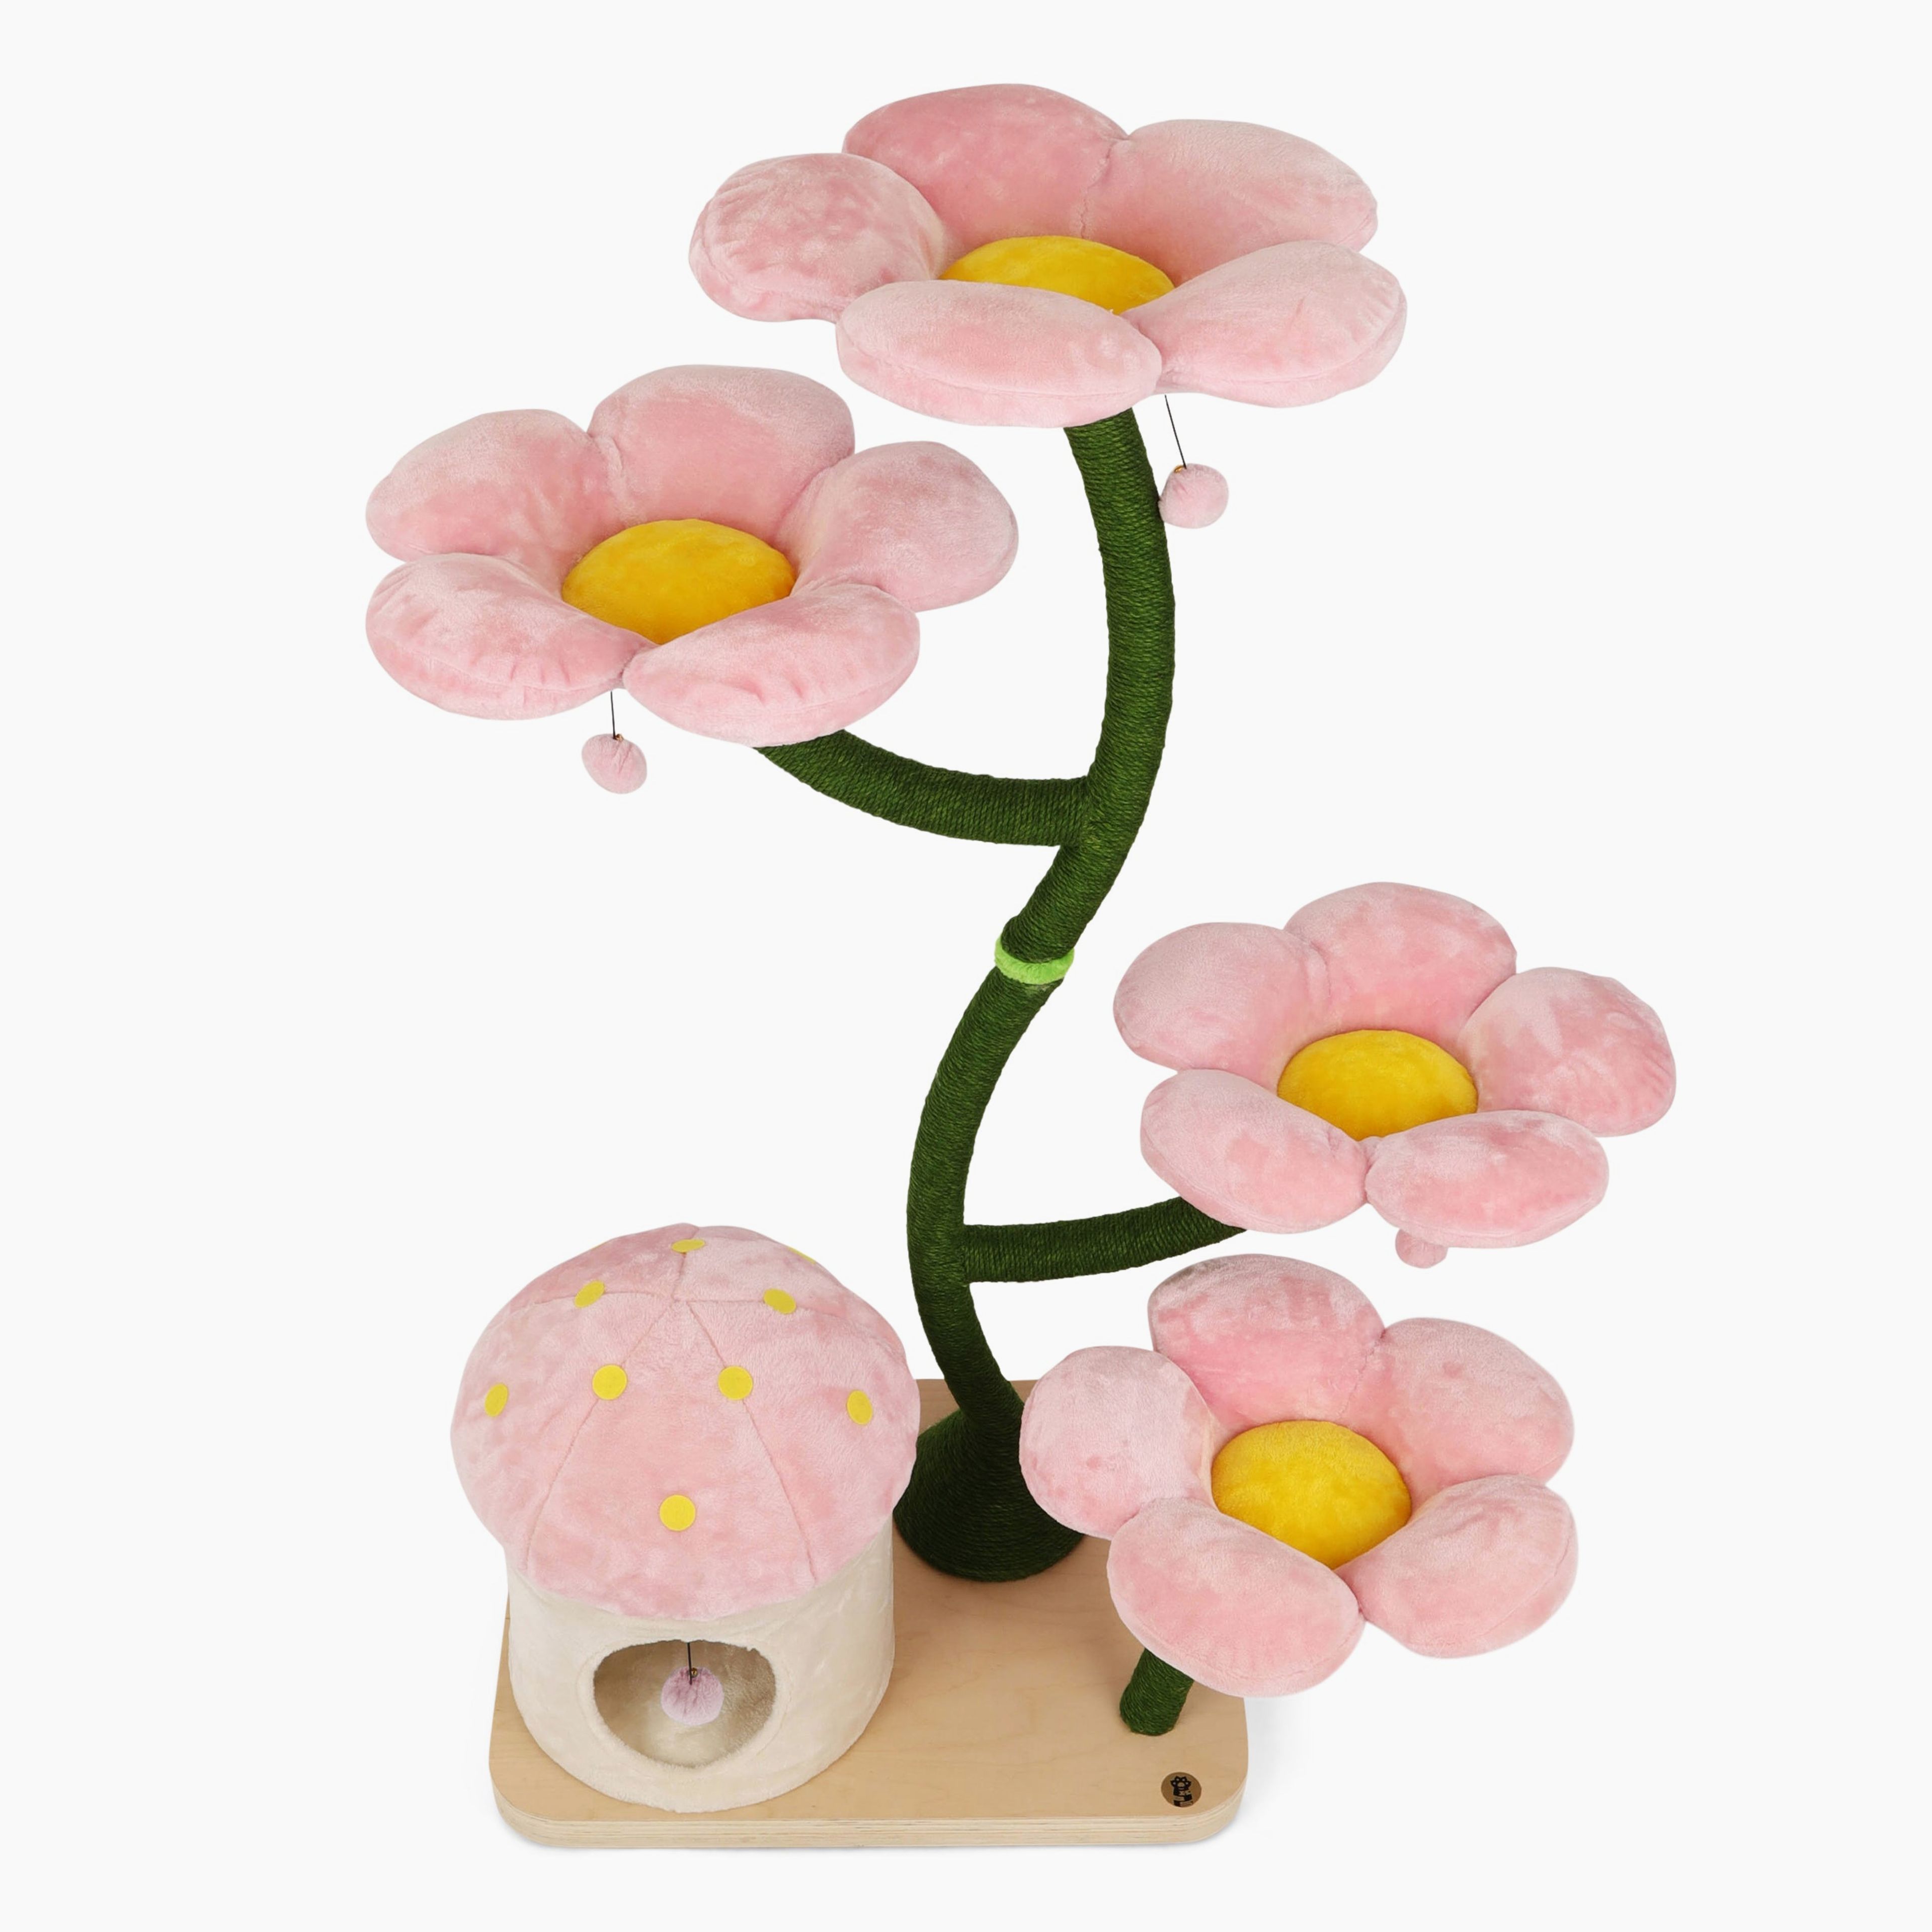 Cherry Blossom Eden: The Garden Of Flowers